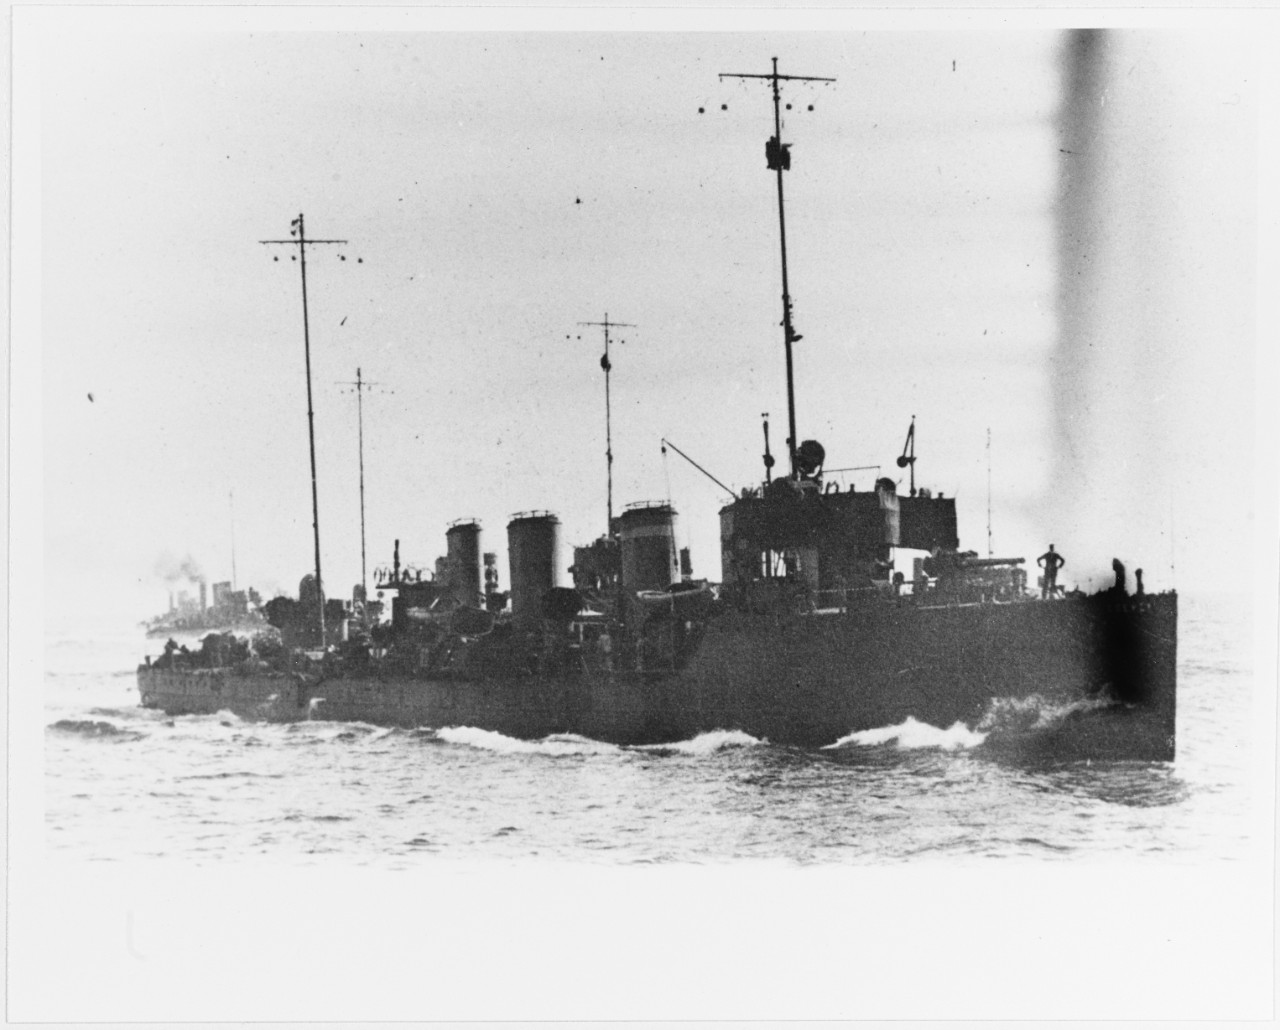 CSEPEL (Austrian Destroyer, 1912-1929)